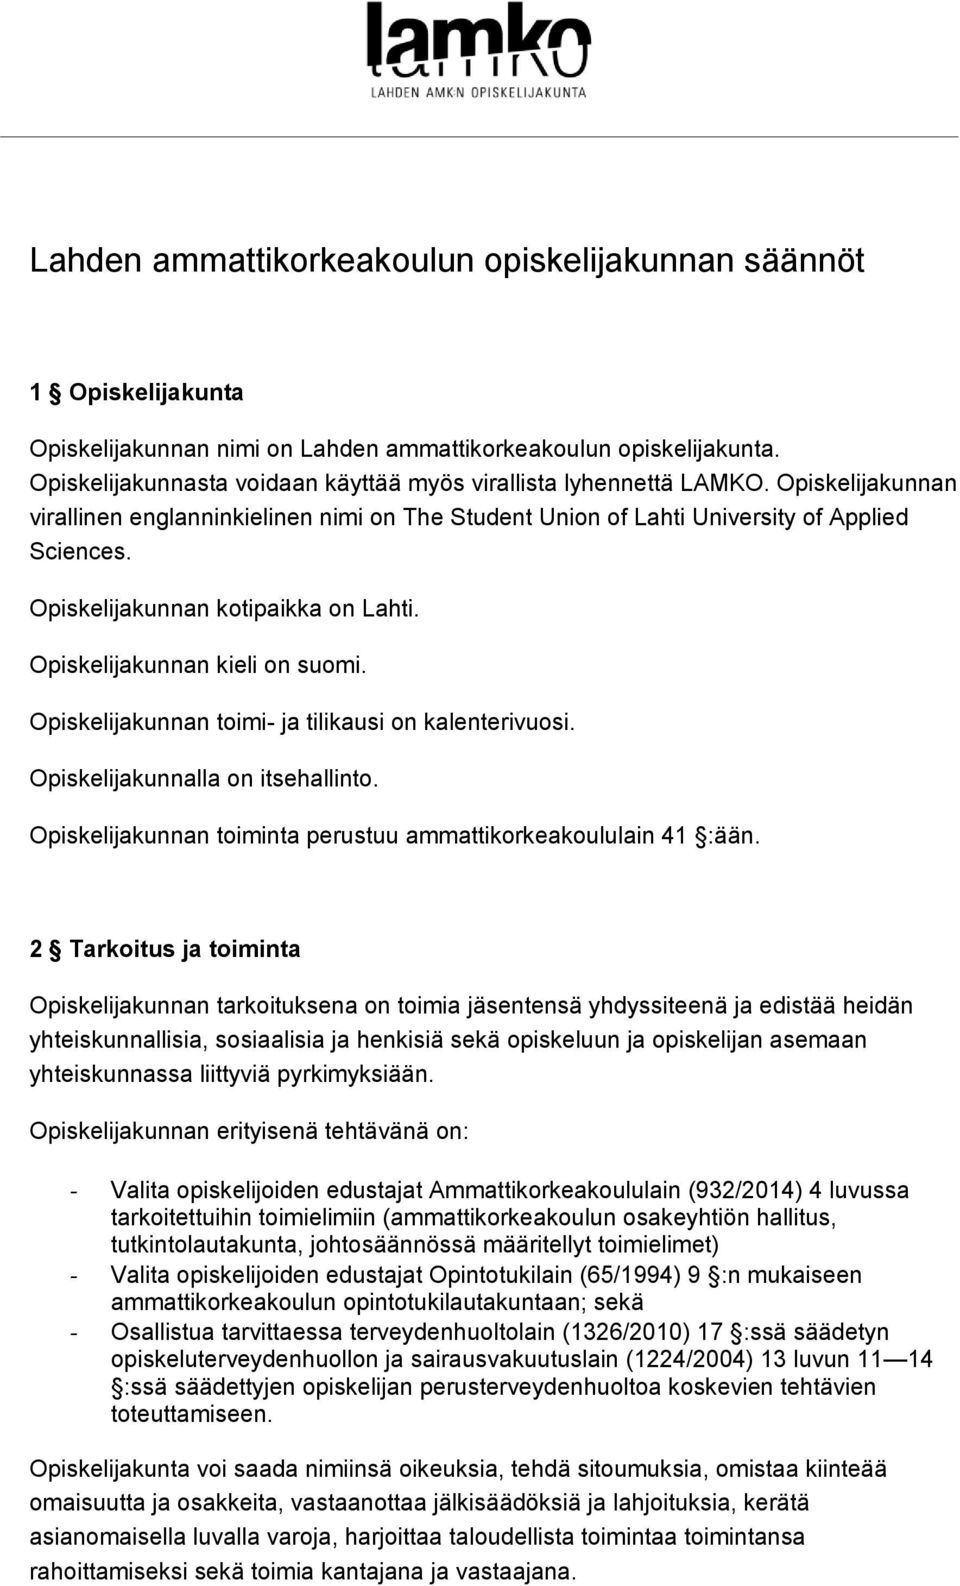 Opiskelijakunnan kotipaikka on Lahti. Opiskelijakunnan kieli on suomi. Opiskelijakunnan toimi- ja tilikausi on kalenterivuosi. Opiskelijakunnalla on itsehallinto.